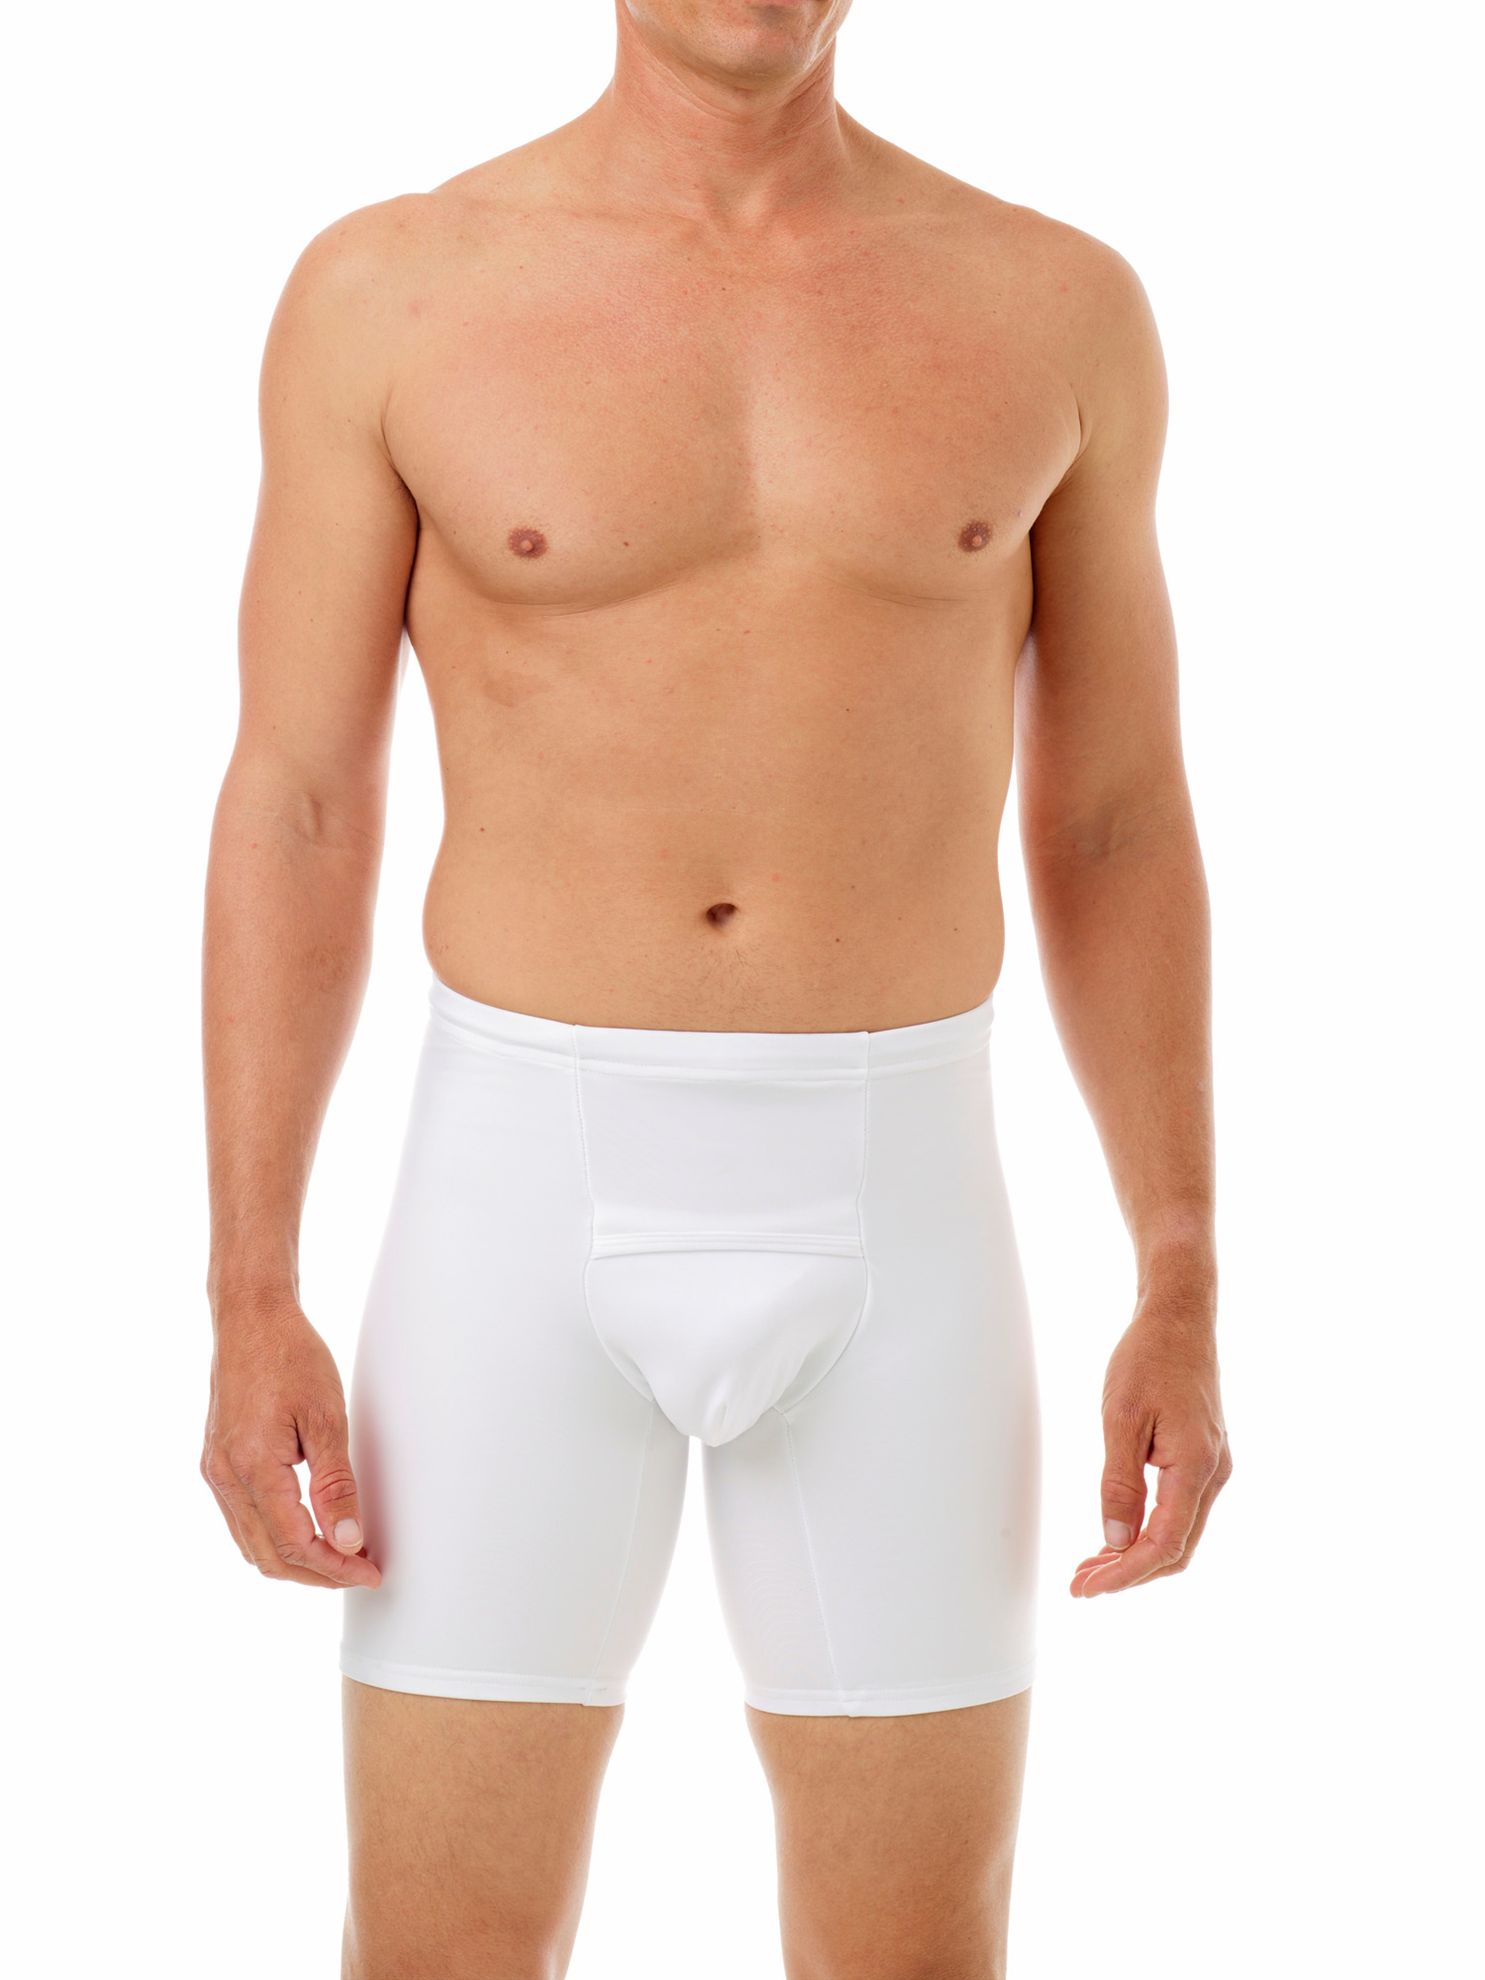 Bottom Underwear